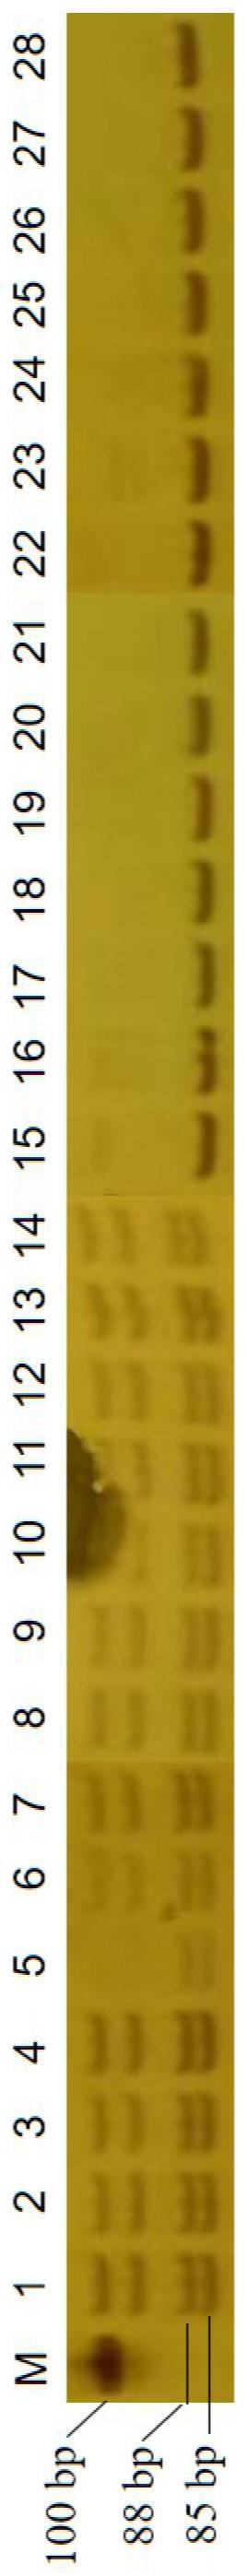 一种梨的矮化性状SSR分子标记、引物、试剂盒及其应用